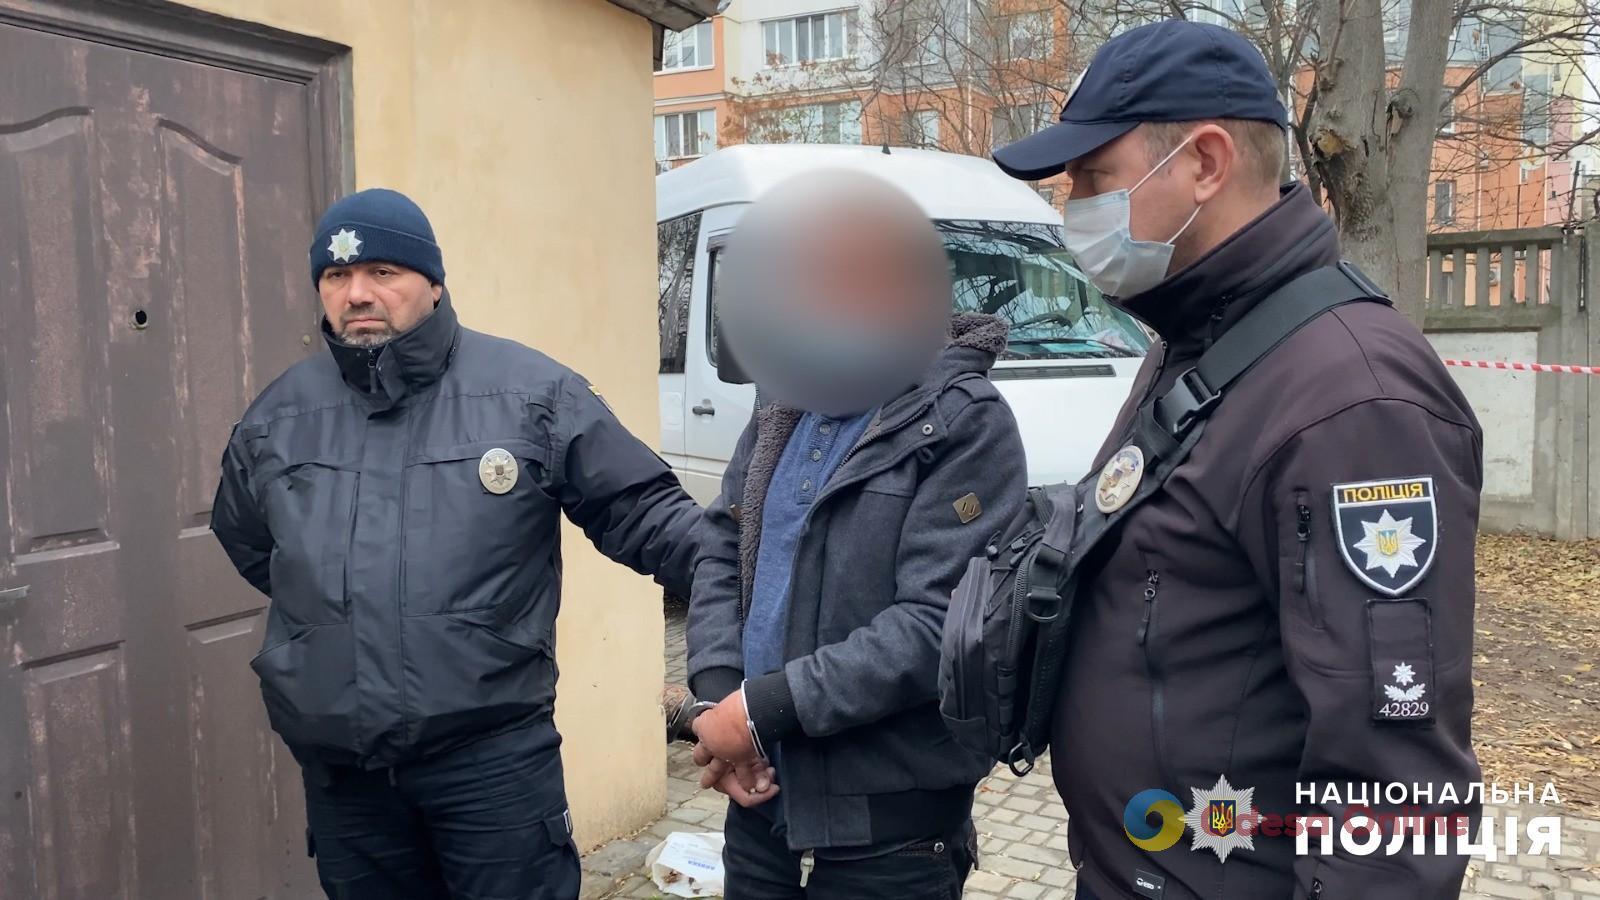 Кровавая месть за оскорбление: в Одессе полицейские задержали мужчину, который зарезал своего знакомого